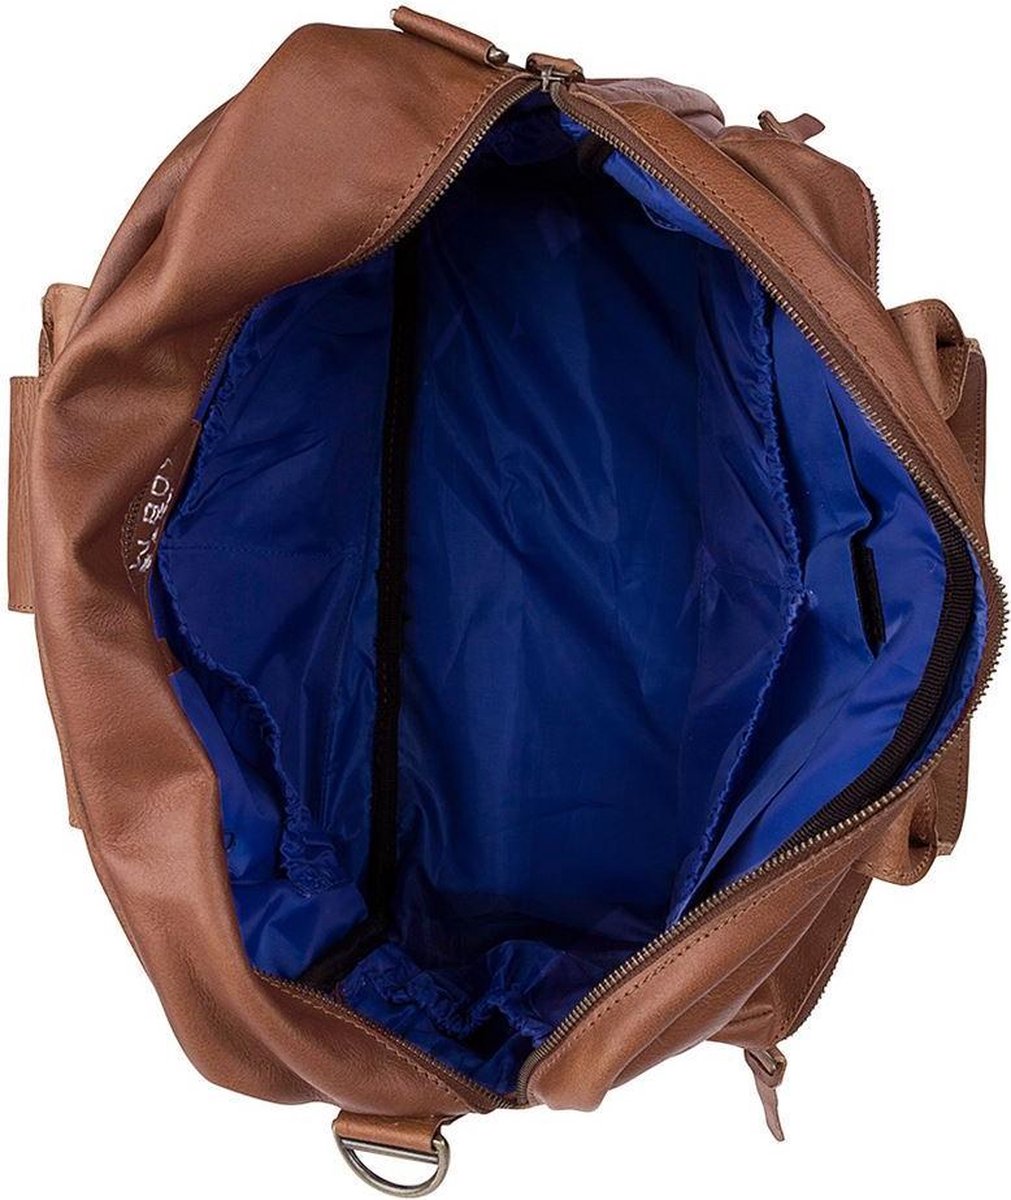 bol.com | Cowboysbag The Diaper Bag Luiertas - Cognac